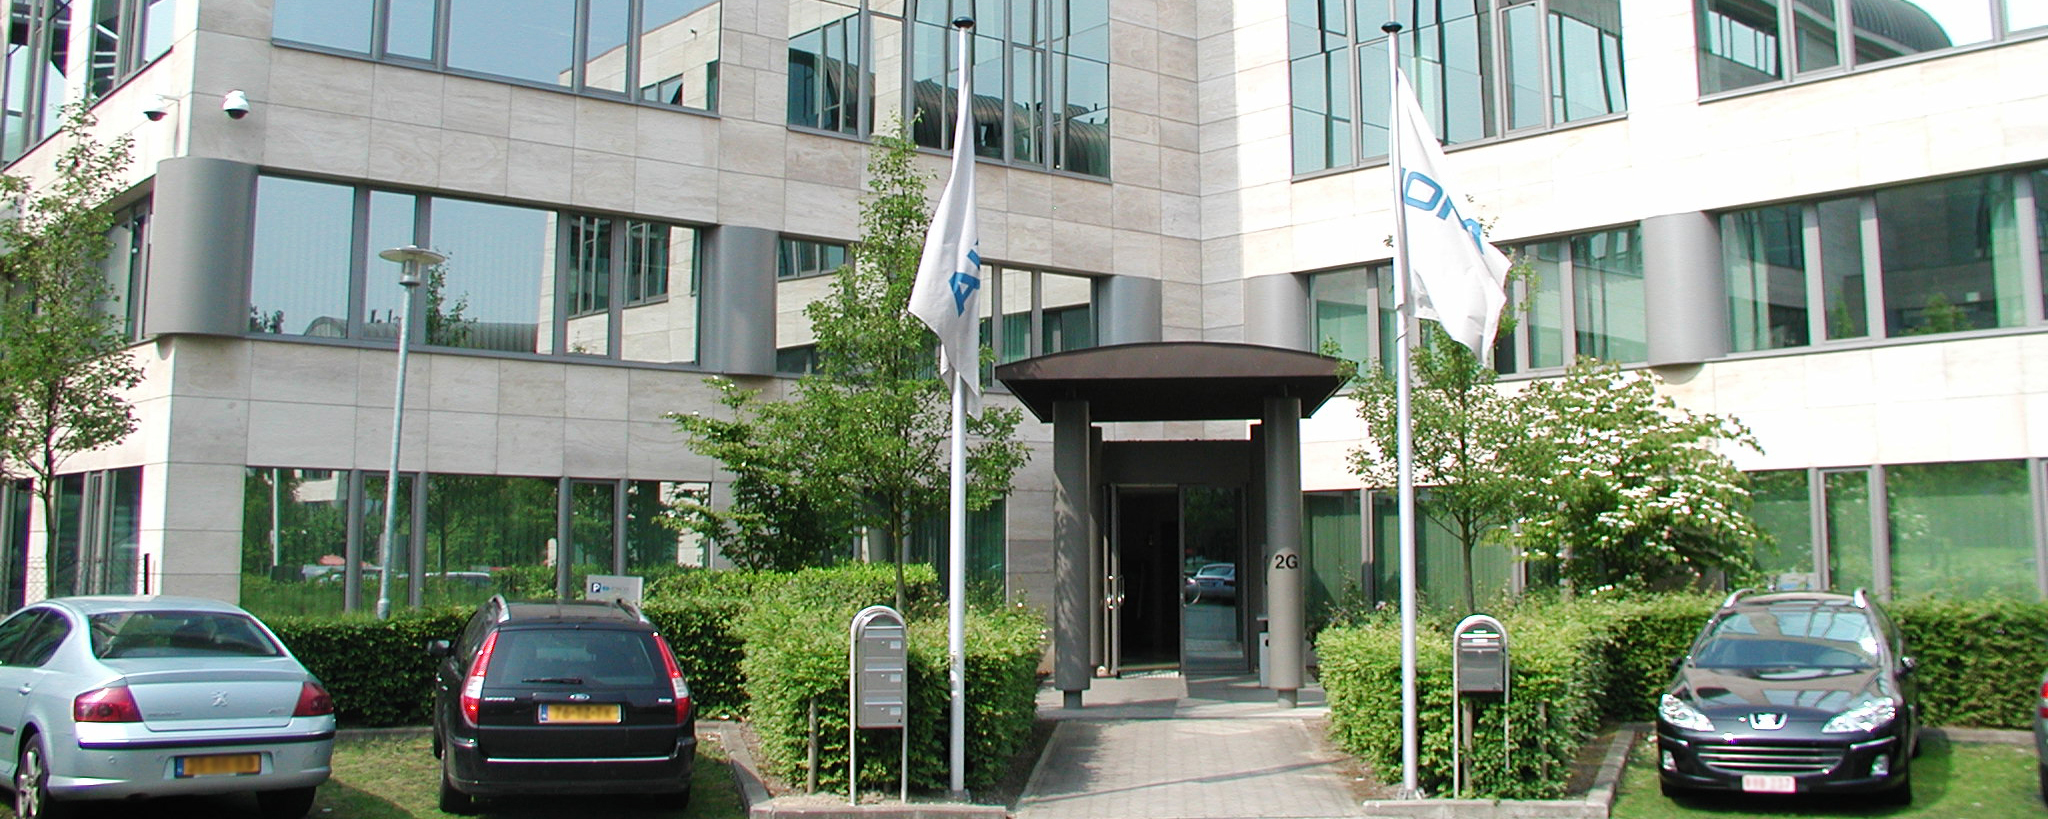 Frontalansicht des Firmensitz der K+S Benelux. Das Firmengebäude ist weiß und besitzt große Glasfenster und einem grün bepflanzten Vorgarten. Vor dem Gebäude ist ein Parkplatz.